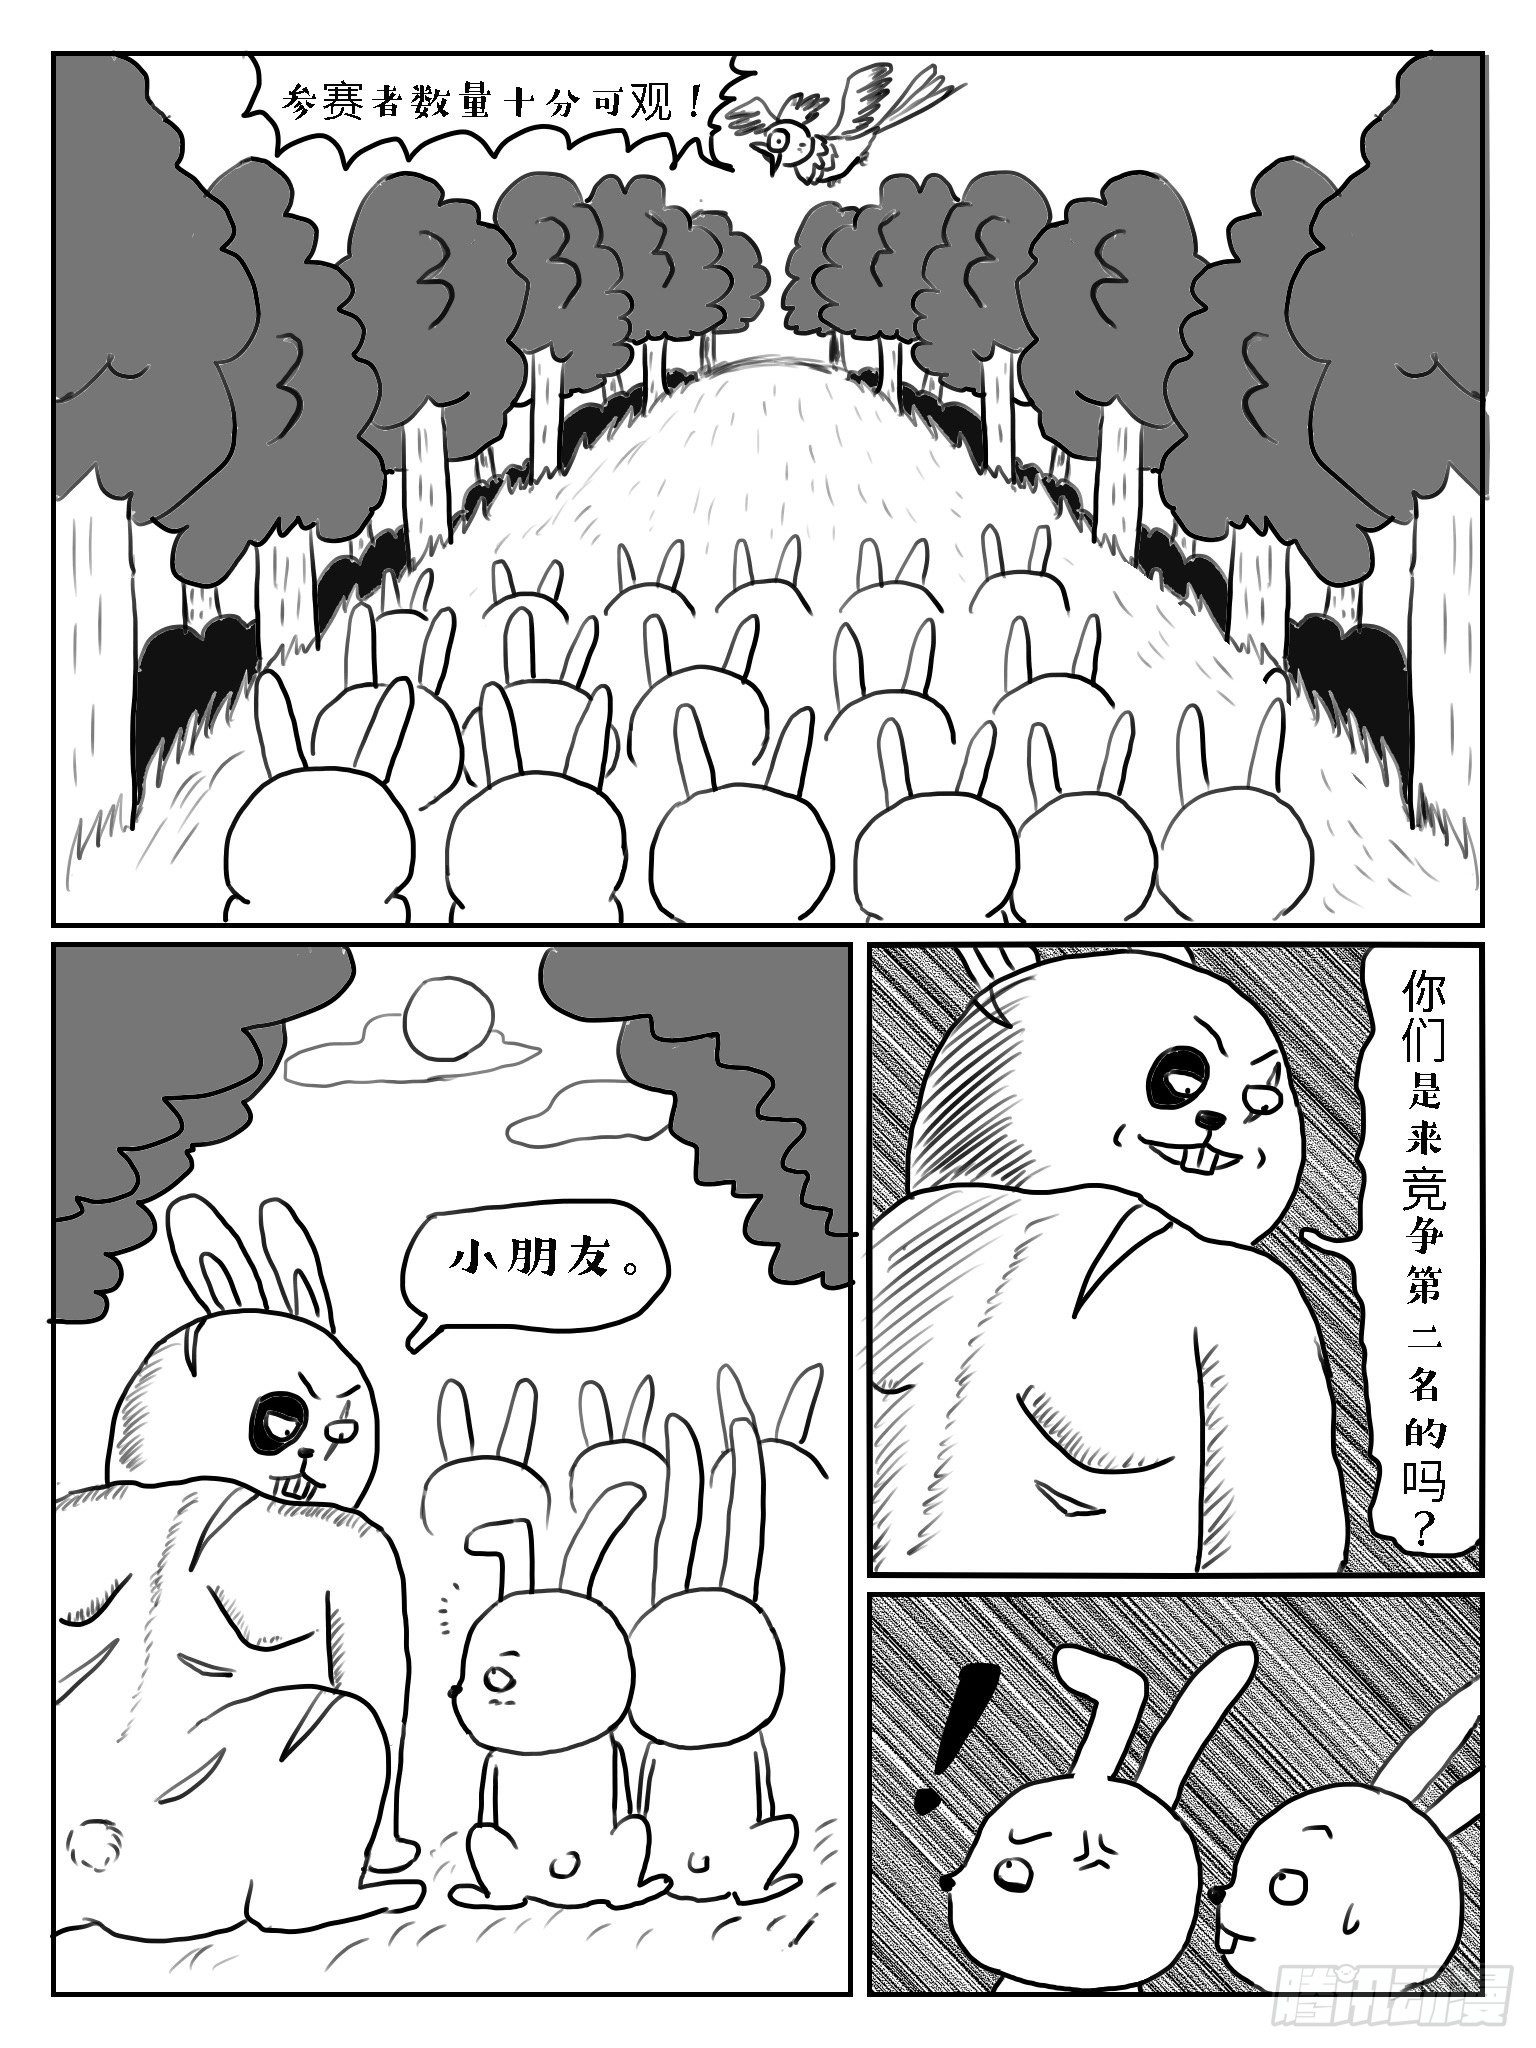 成語故事 - 守株待兔 - 1